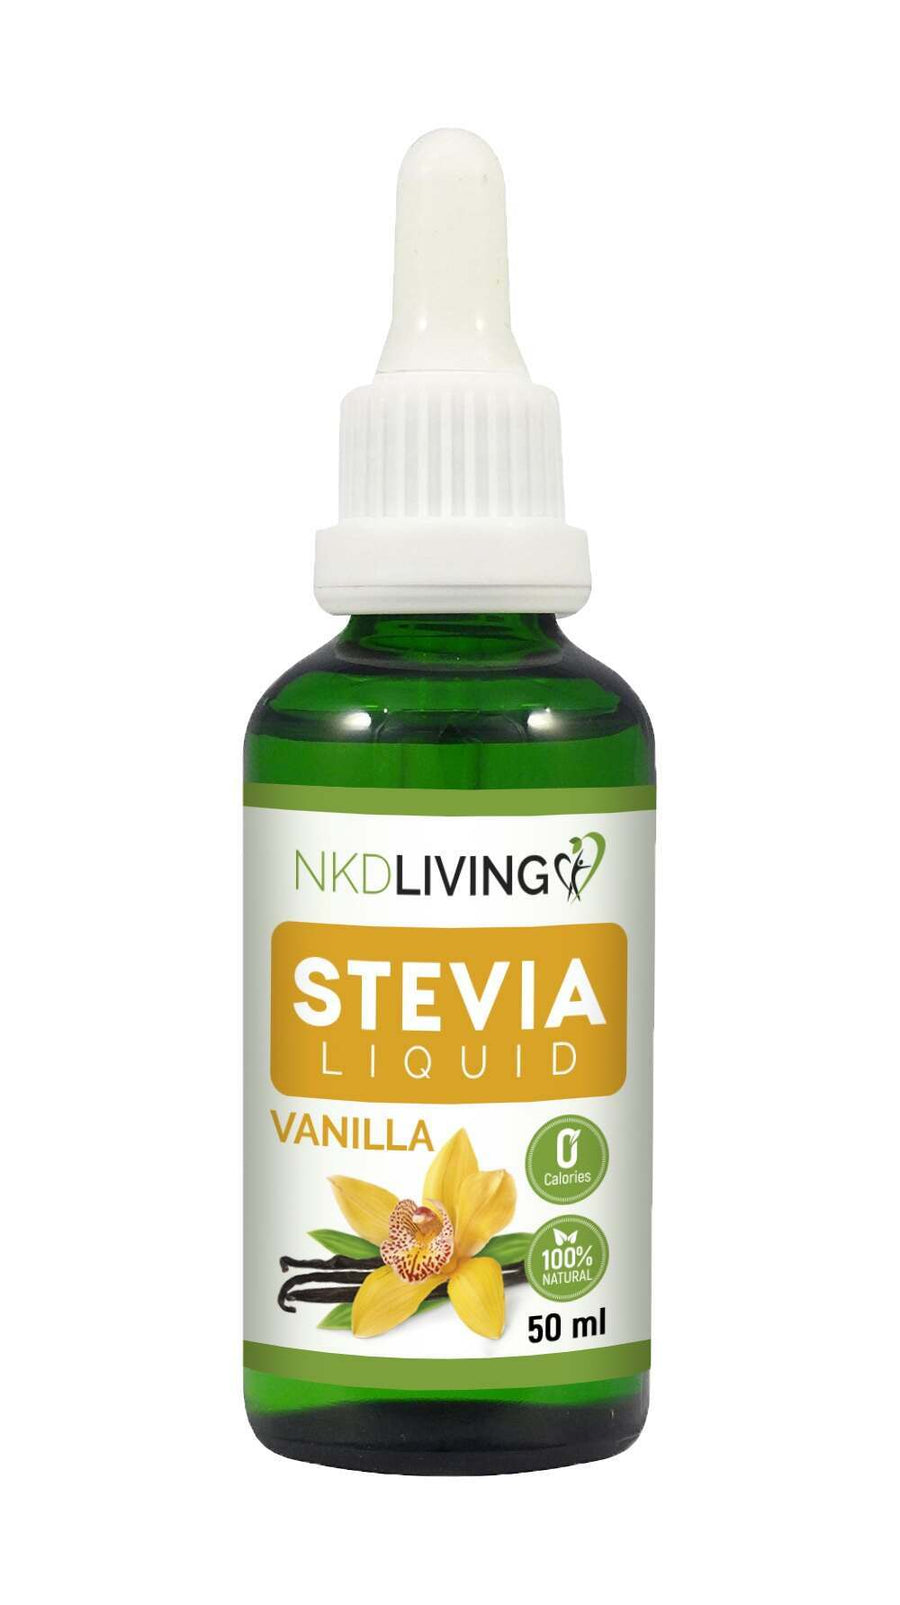 NKD Living 100% Natural Vanilla Stevia Liquid 50ml